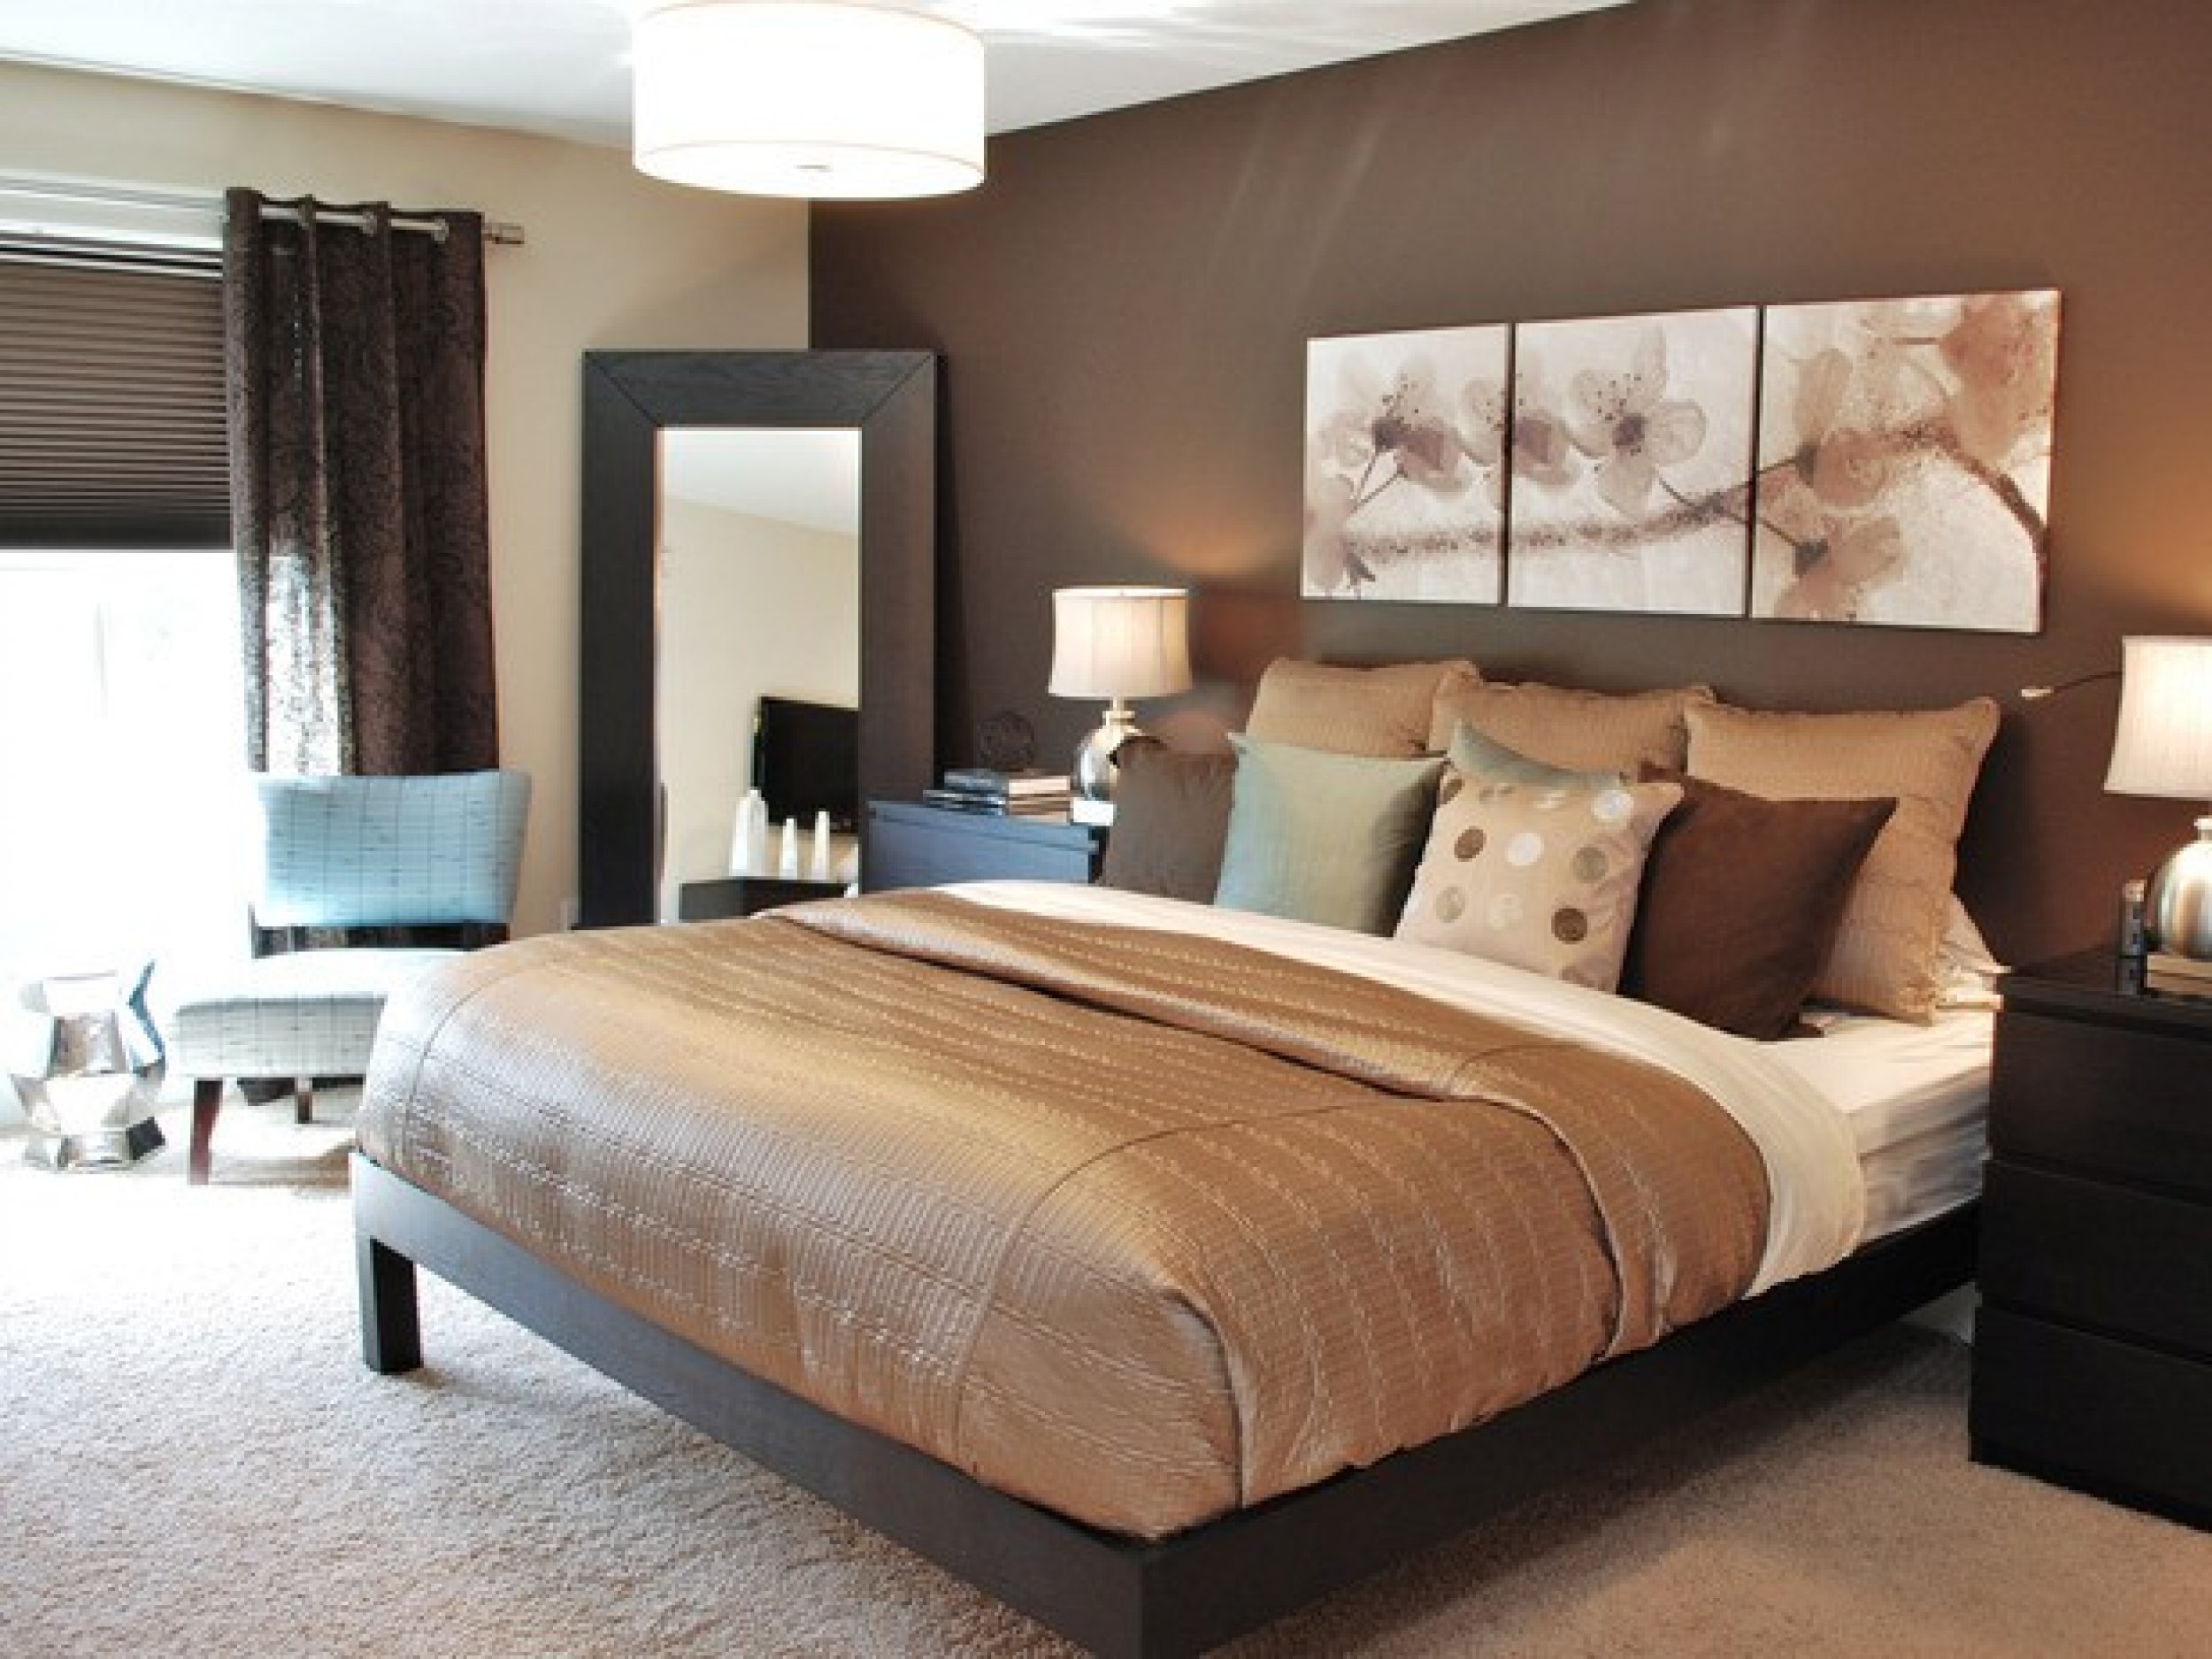 Top 10 Best bedroom designs